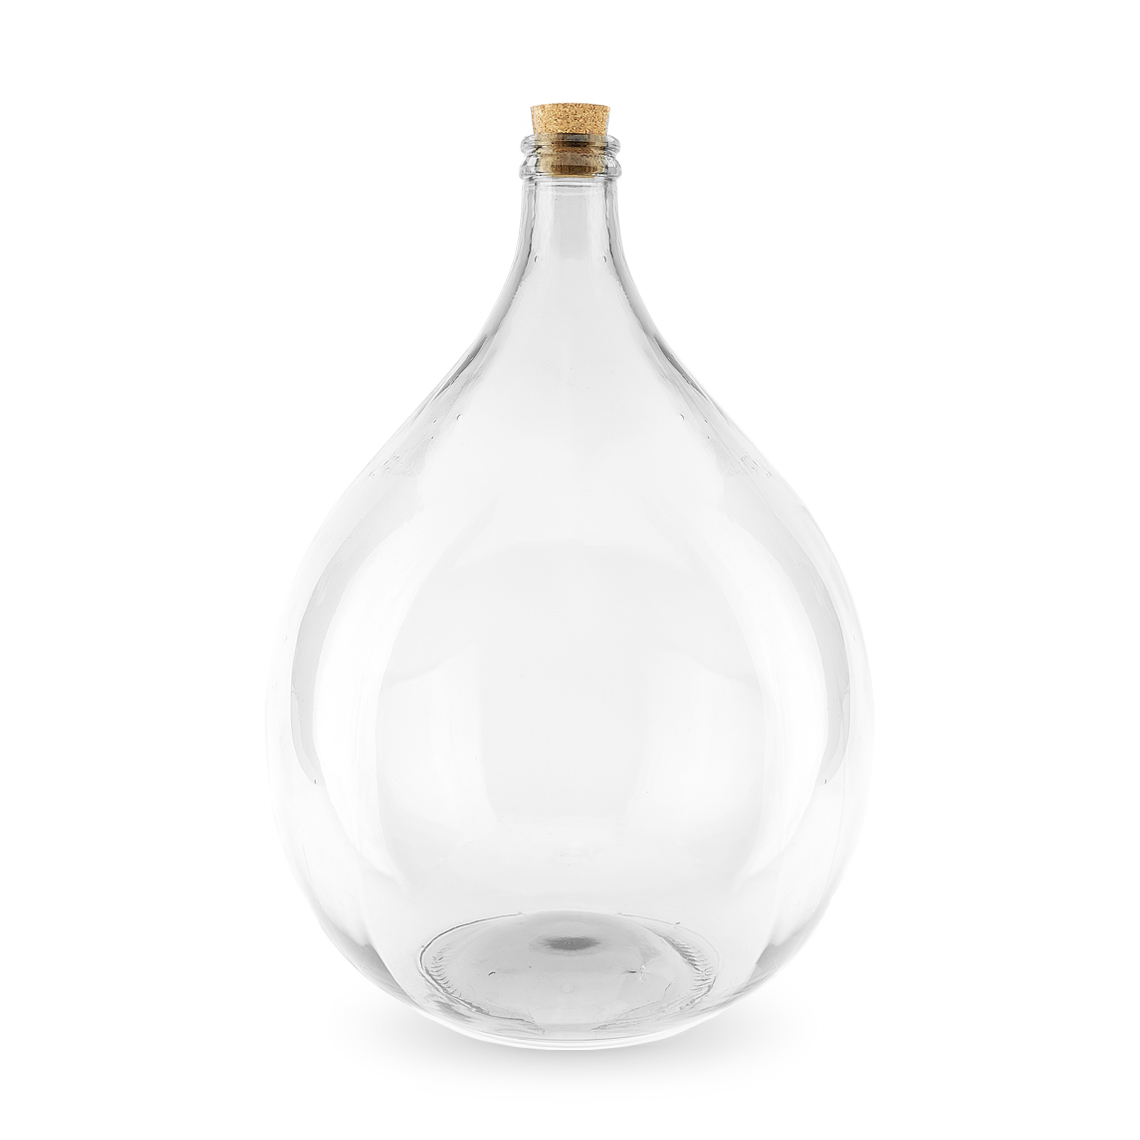 Welvarend Professor ondersteboven Terrarium glazen fles 25 liter kopen - Stekkie